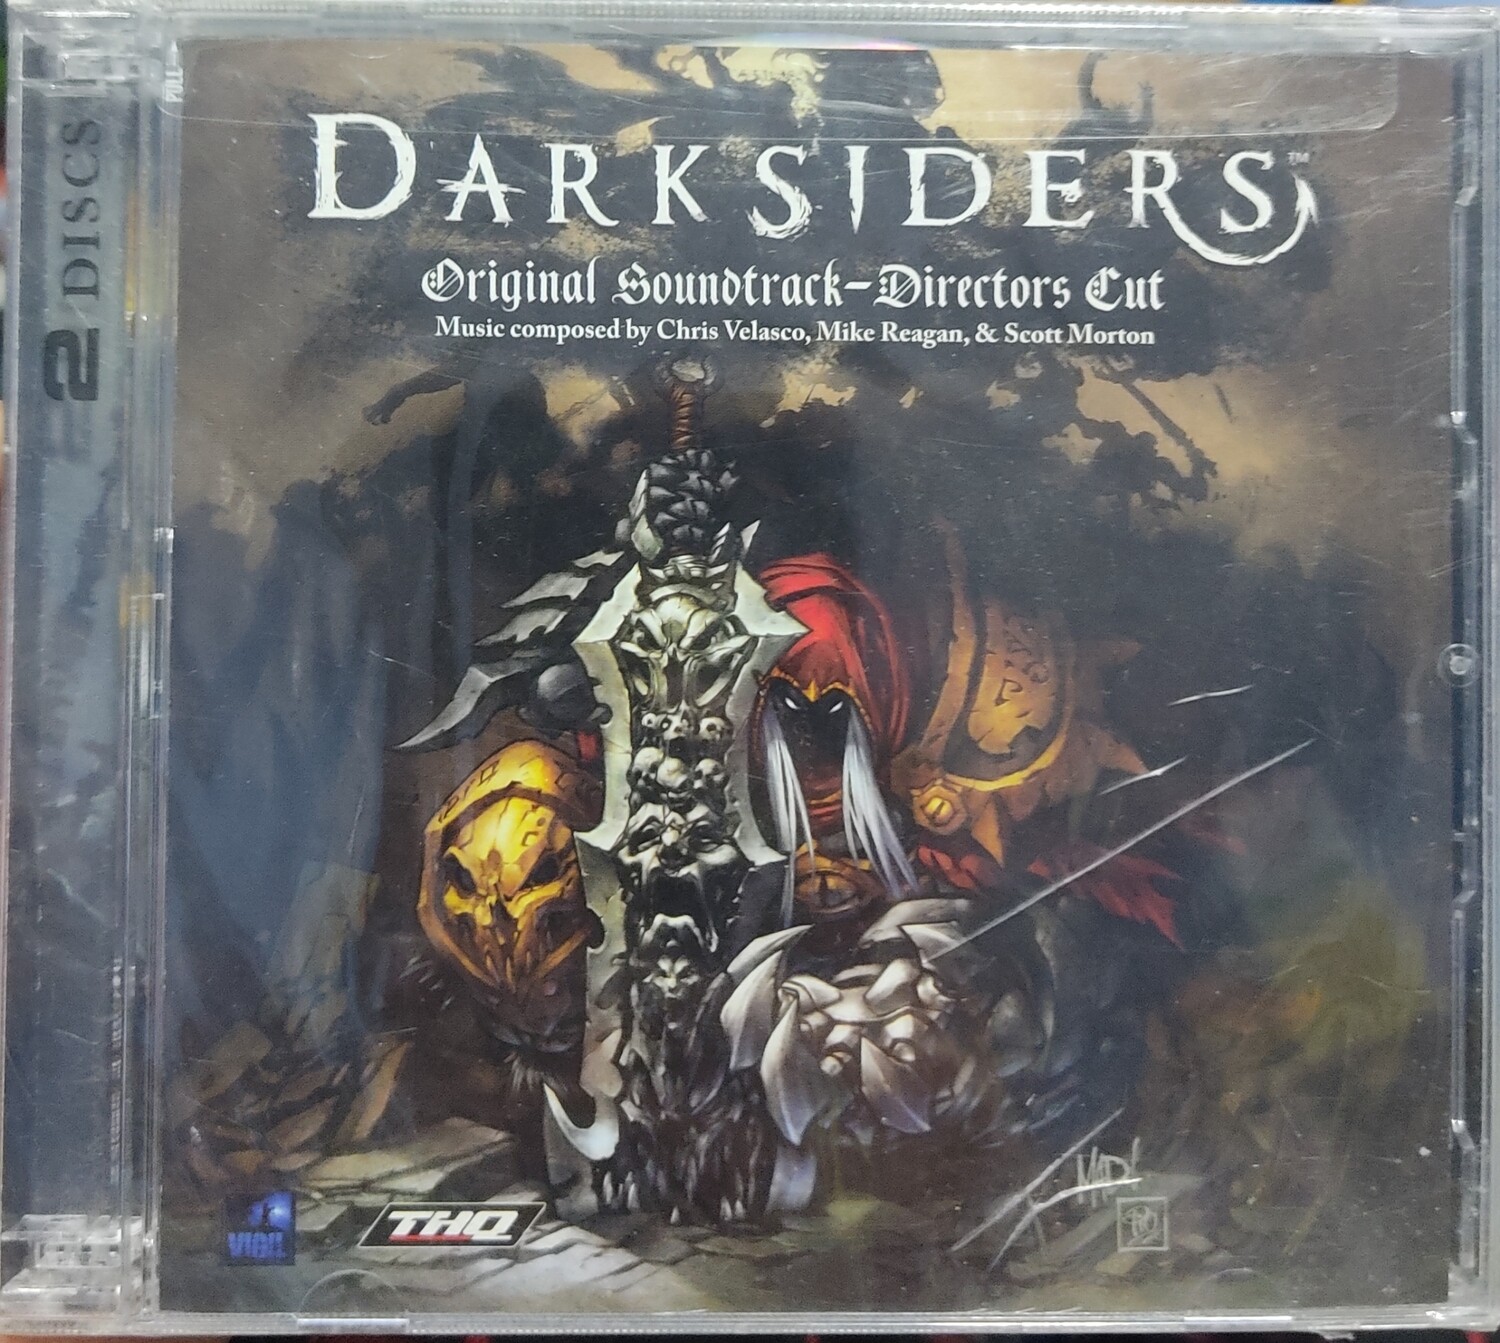 BA1 Darksiders Original Soundtrack Directors Cut Musica Original Nuevo Sellado